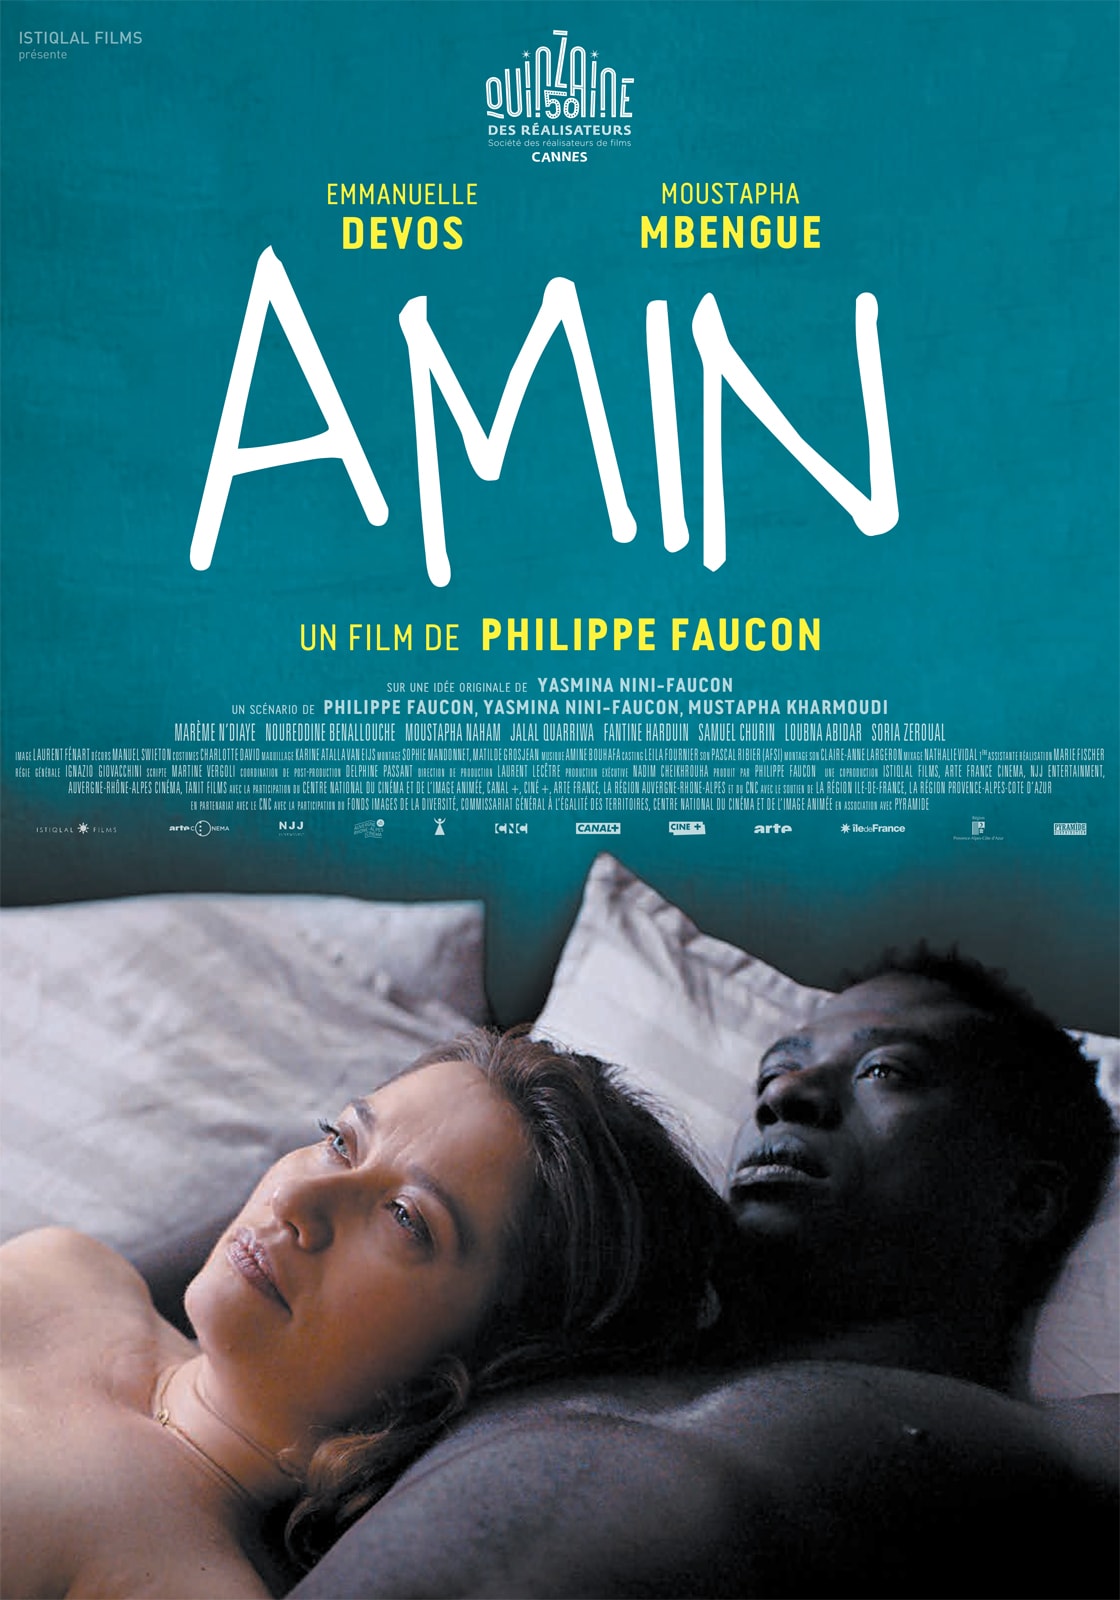 Affiche du film Amin de Philippe Faucon avec Emmanuelle Devos et Moustapha Mbengue Cannes 2018